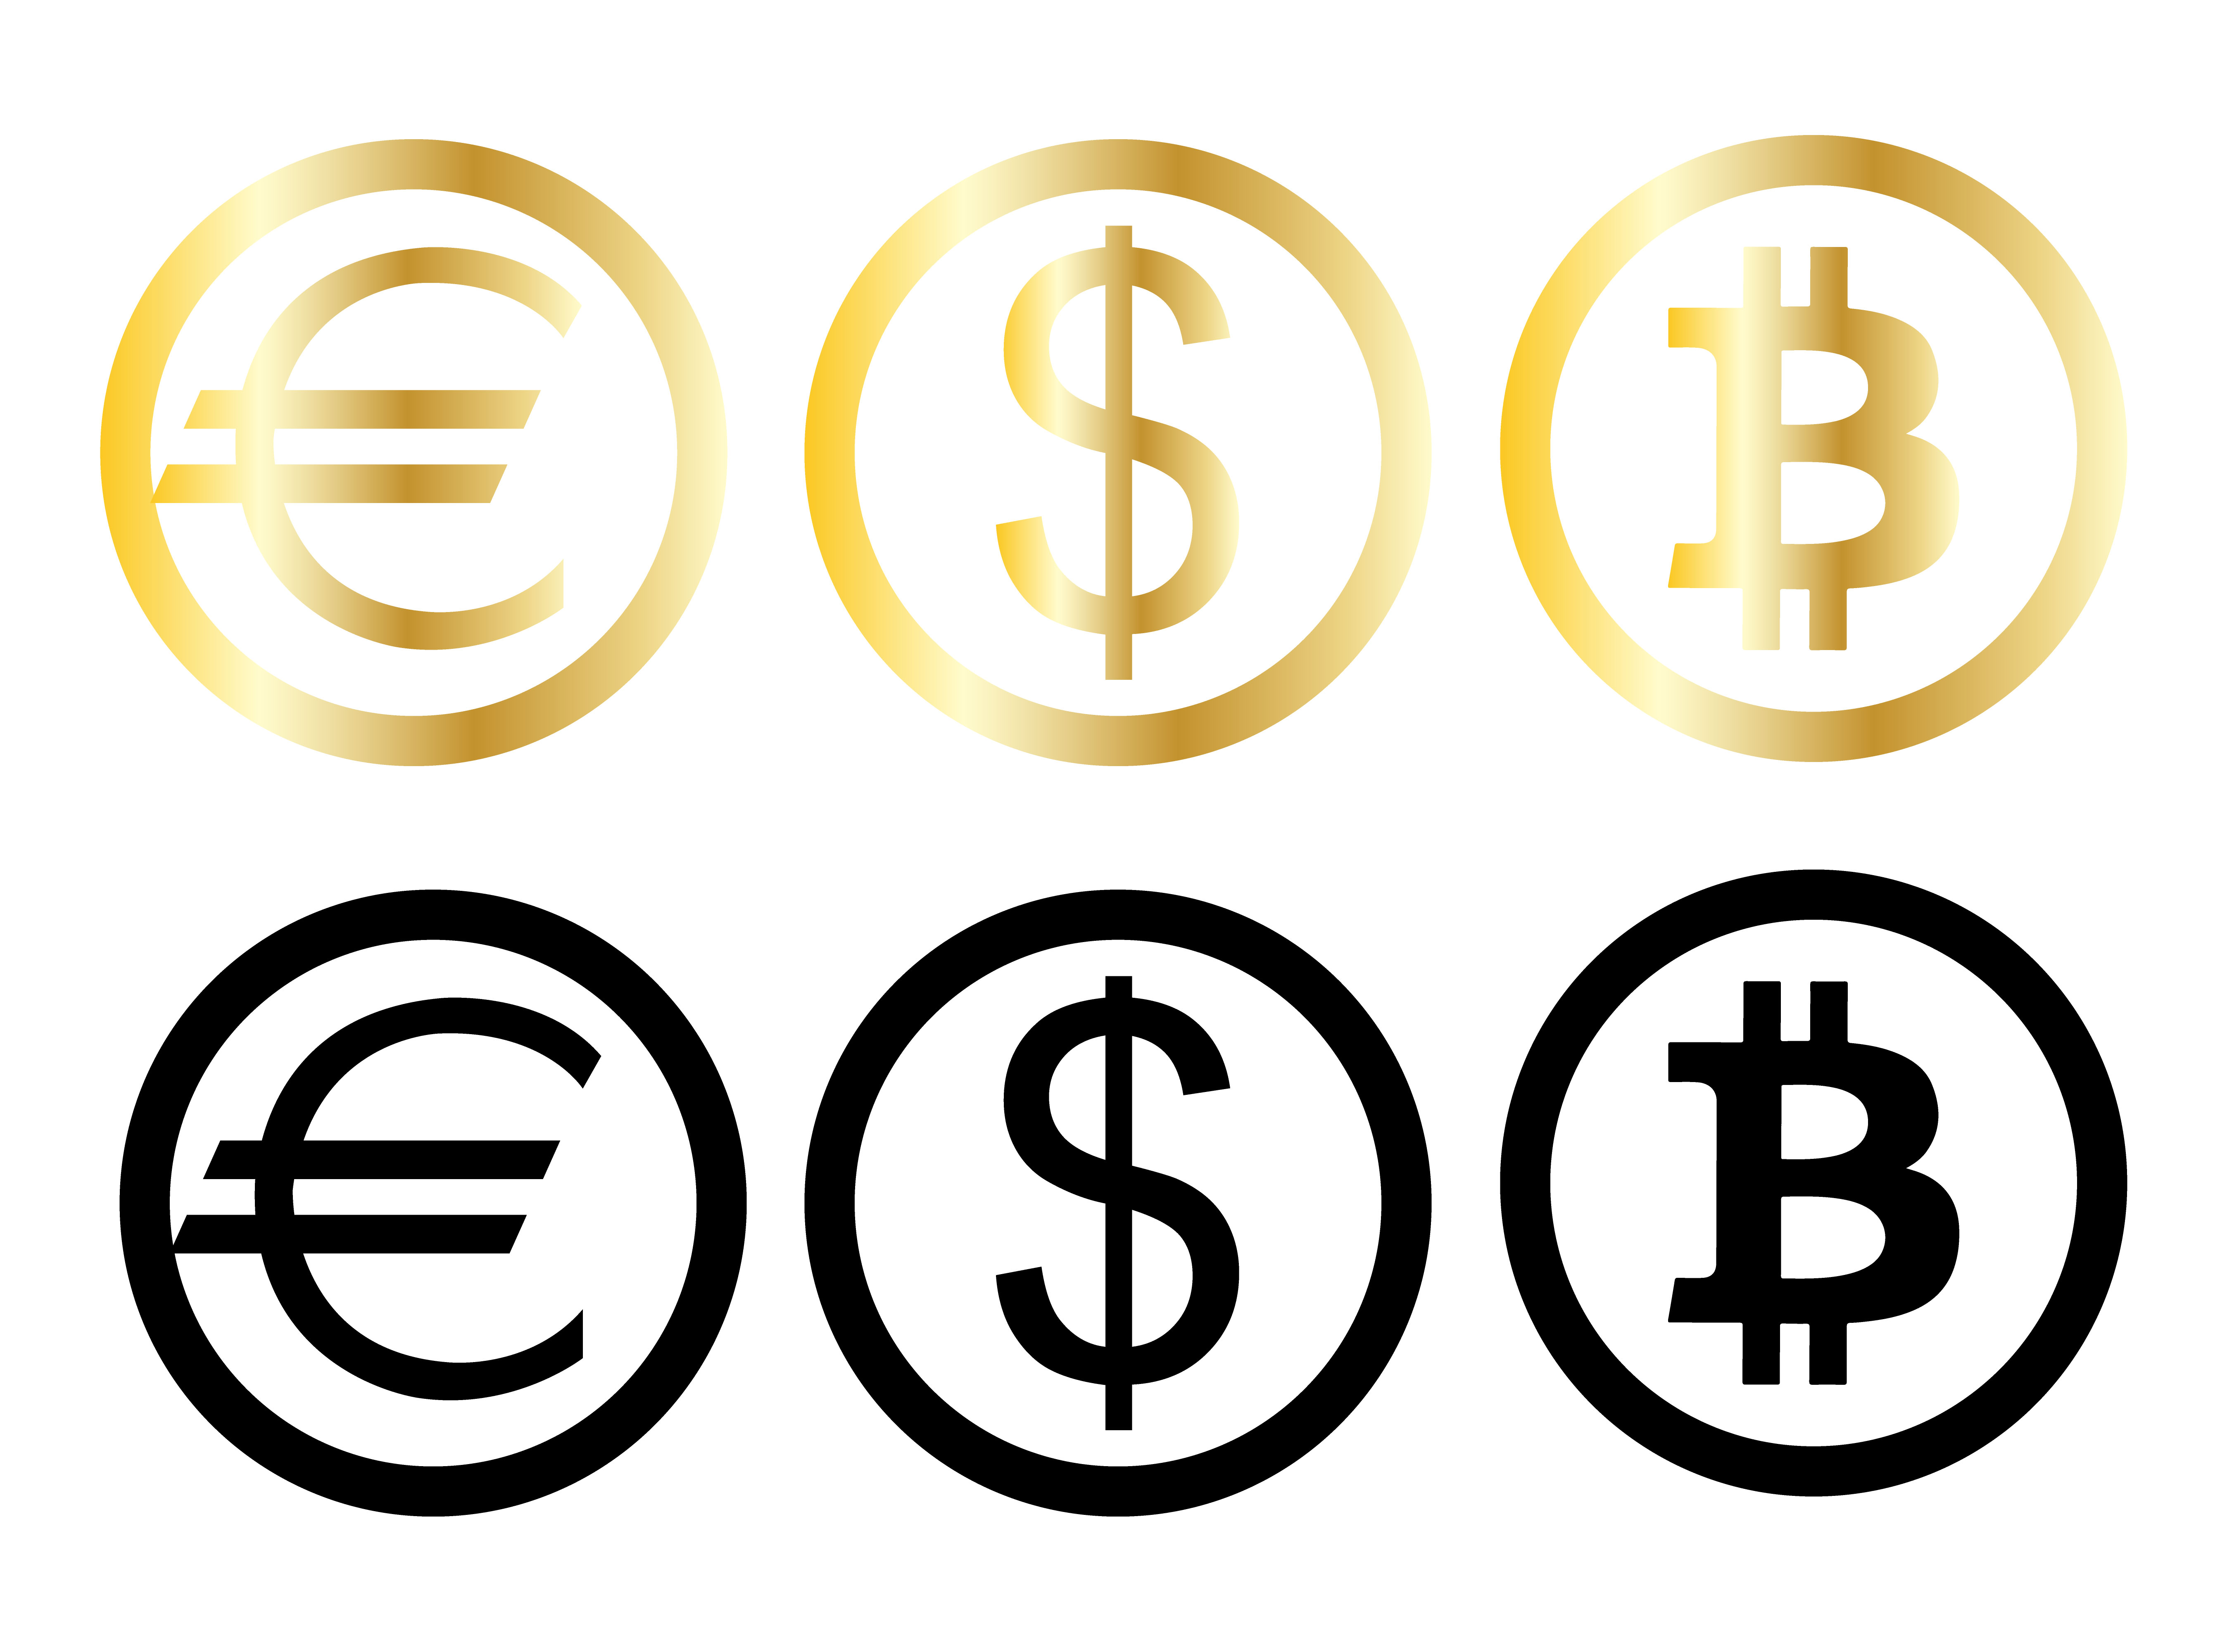 3 currencies. Знаки валют. Значки валют. Значок евро и доллара.